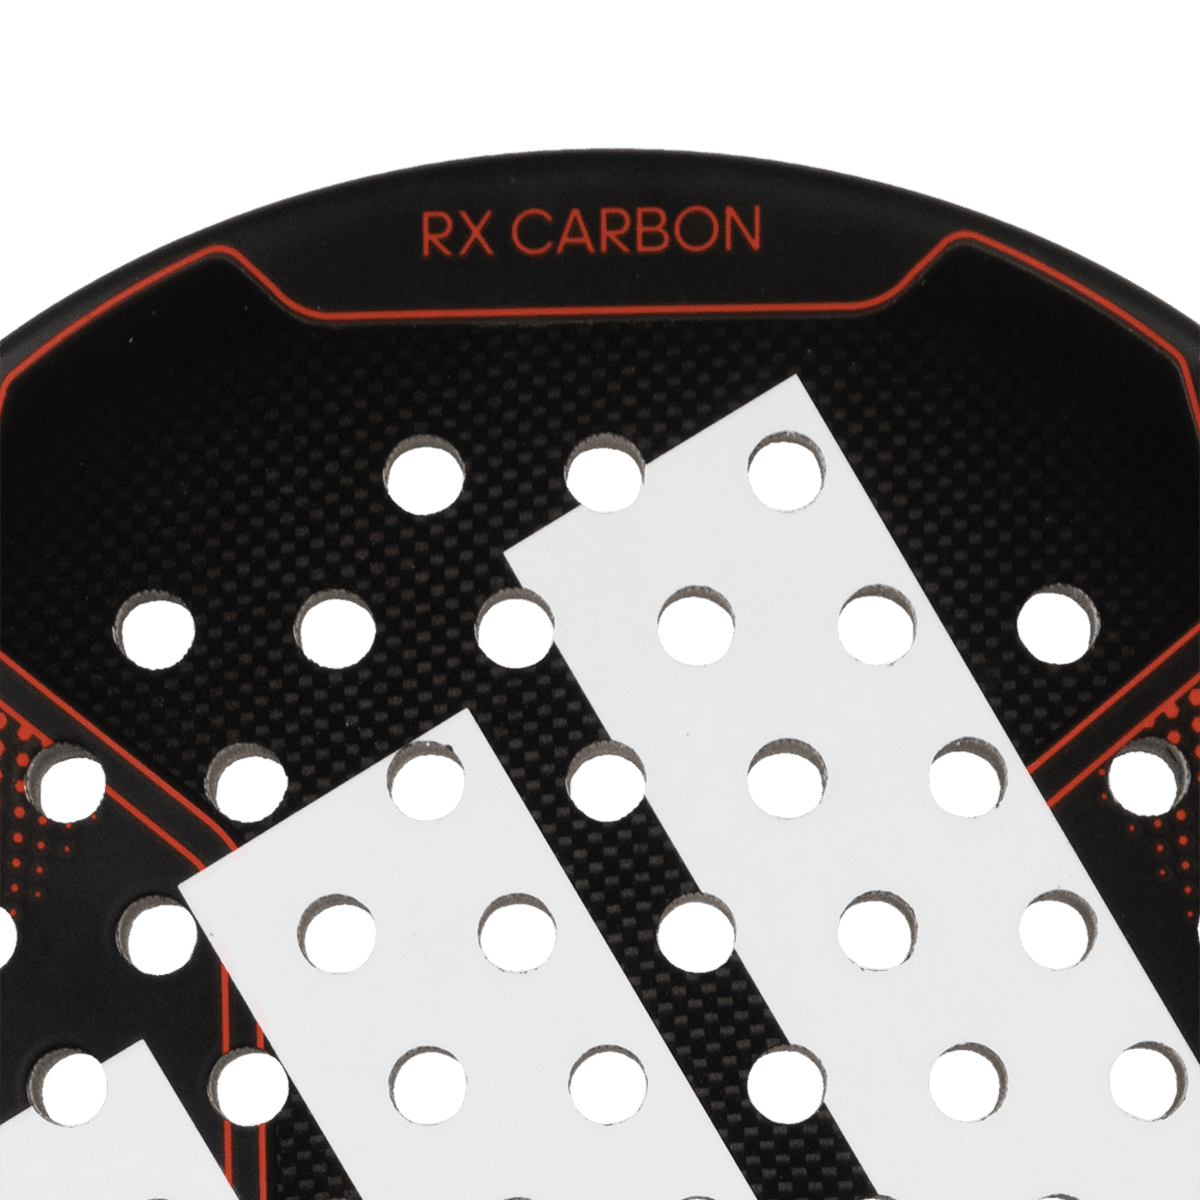 adidas Combideal | RX CARBON padelracket 2023 + padel rugzak MULTIGAME 2023 - Zwart/Rood + padelgrips 3 stuks zwart - PadelAmigos